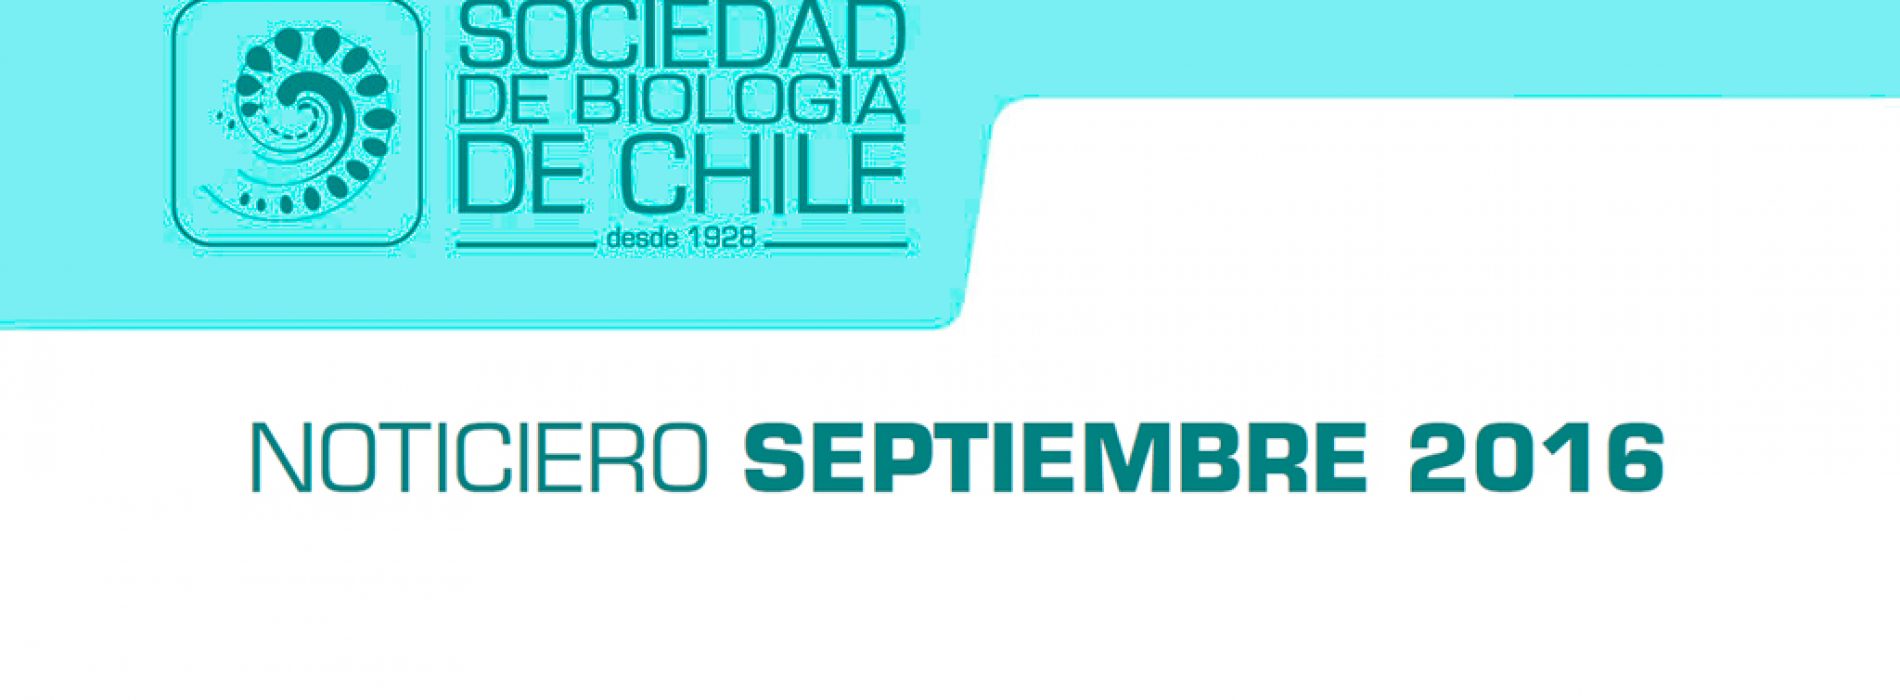 Noticiero Septiembre 2016. Sociedad de Biología de Chile